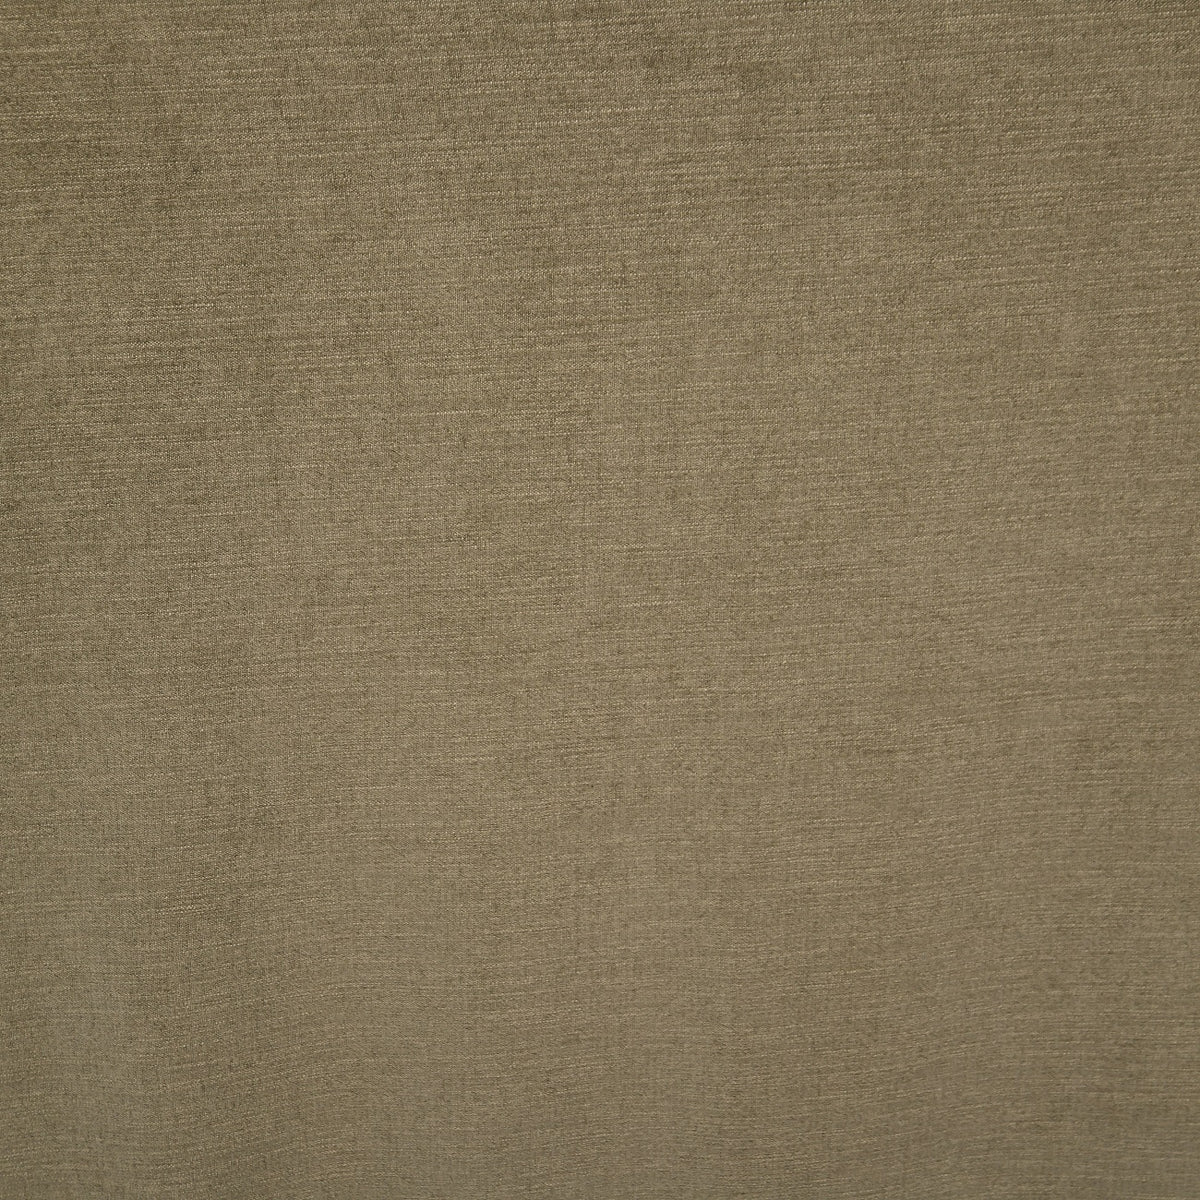 Night curtain gray beige Yeti